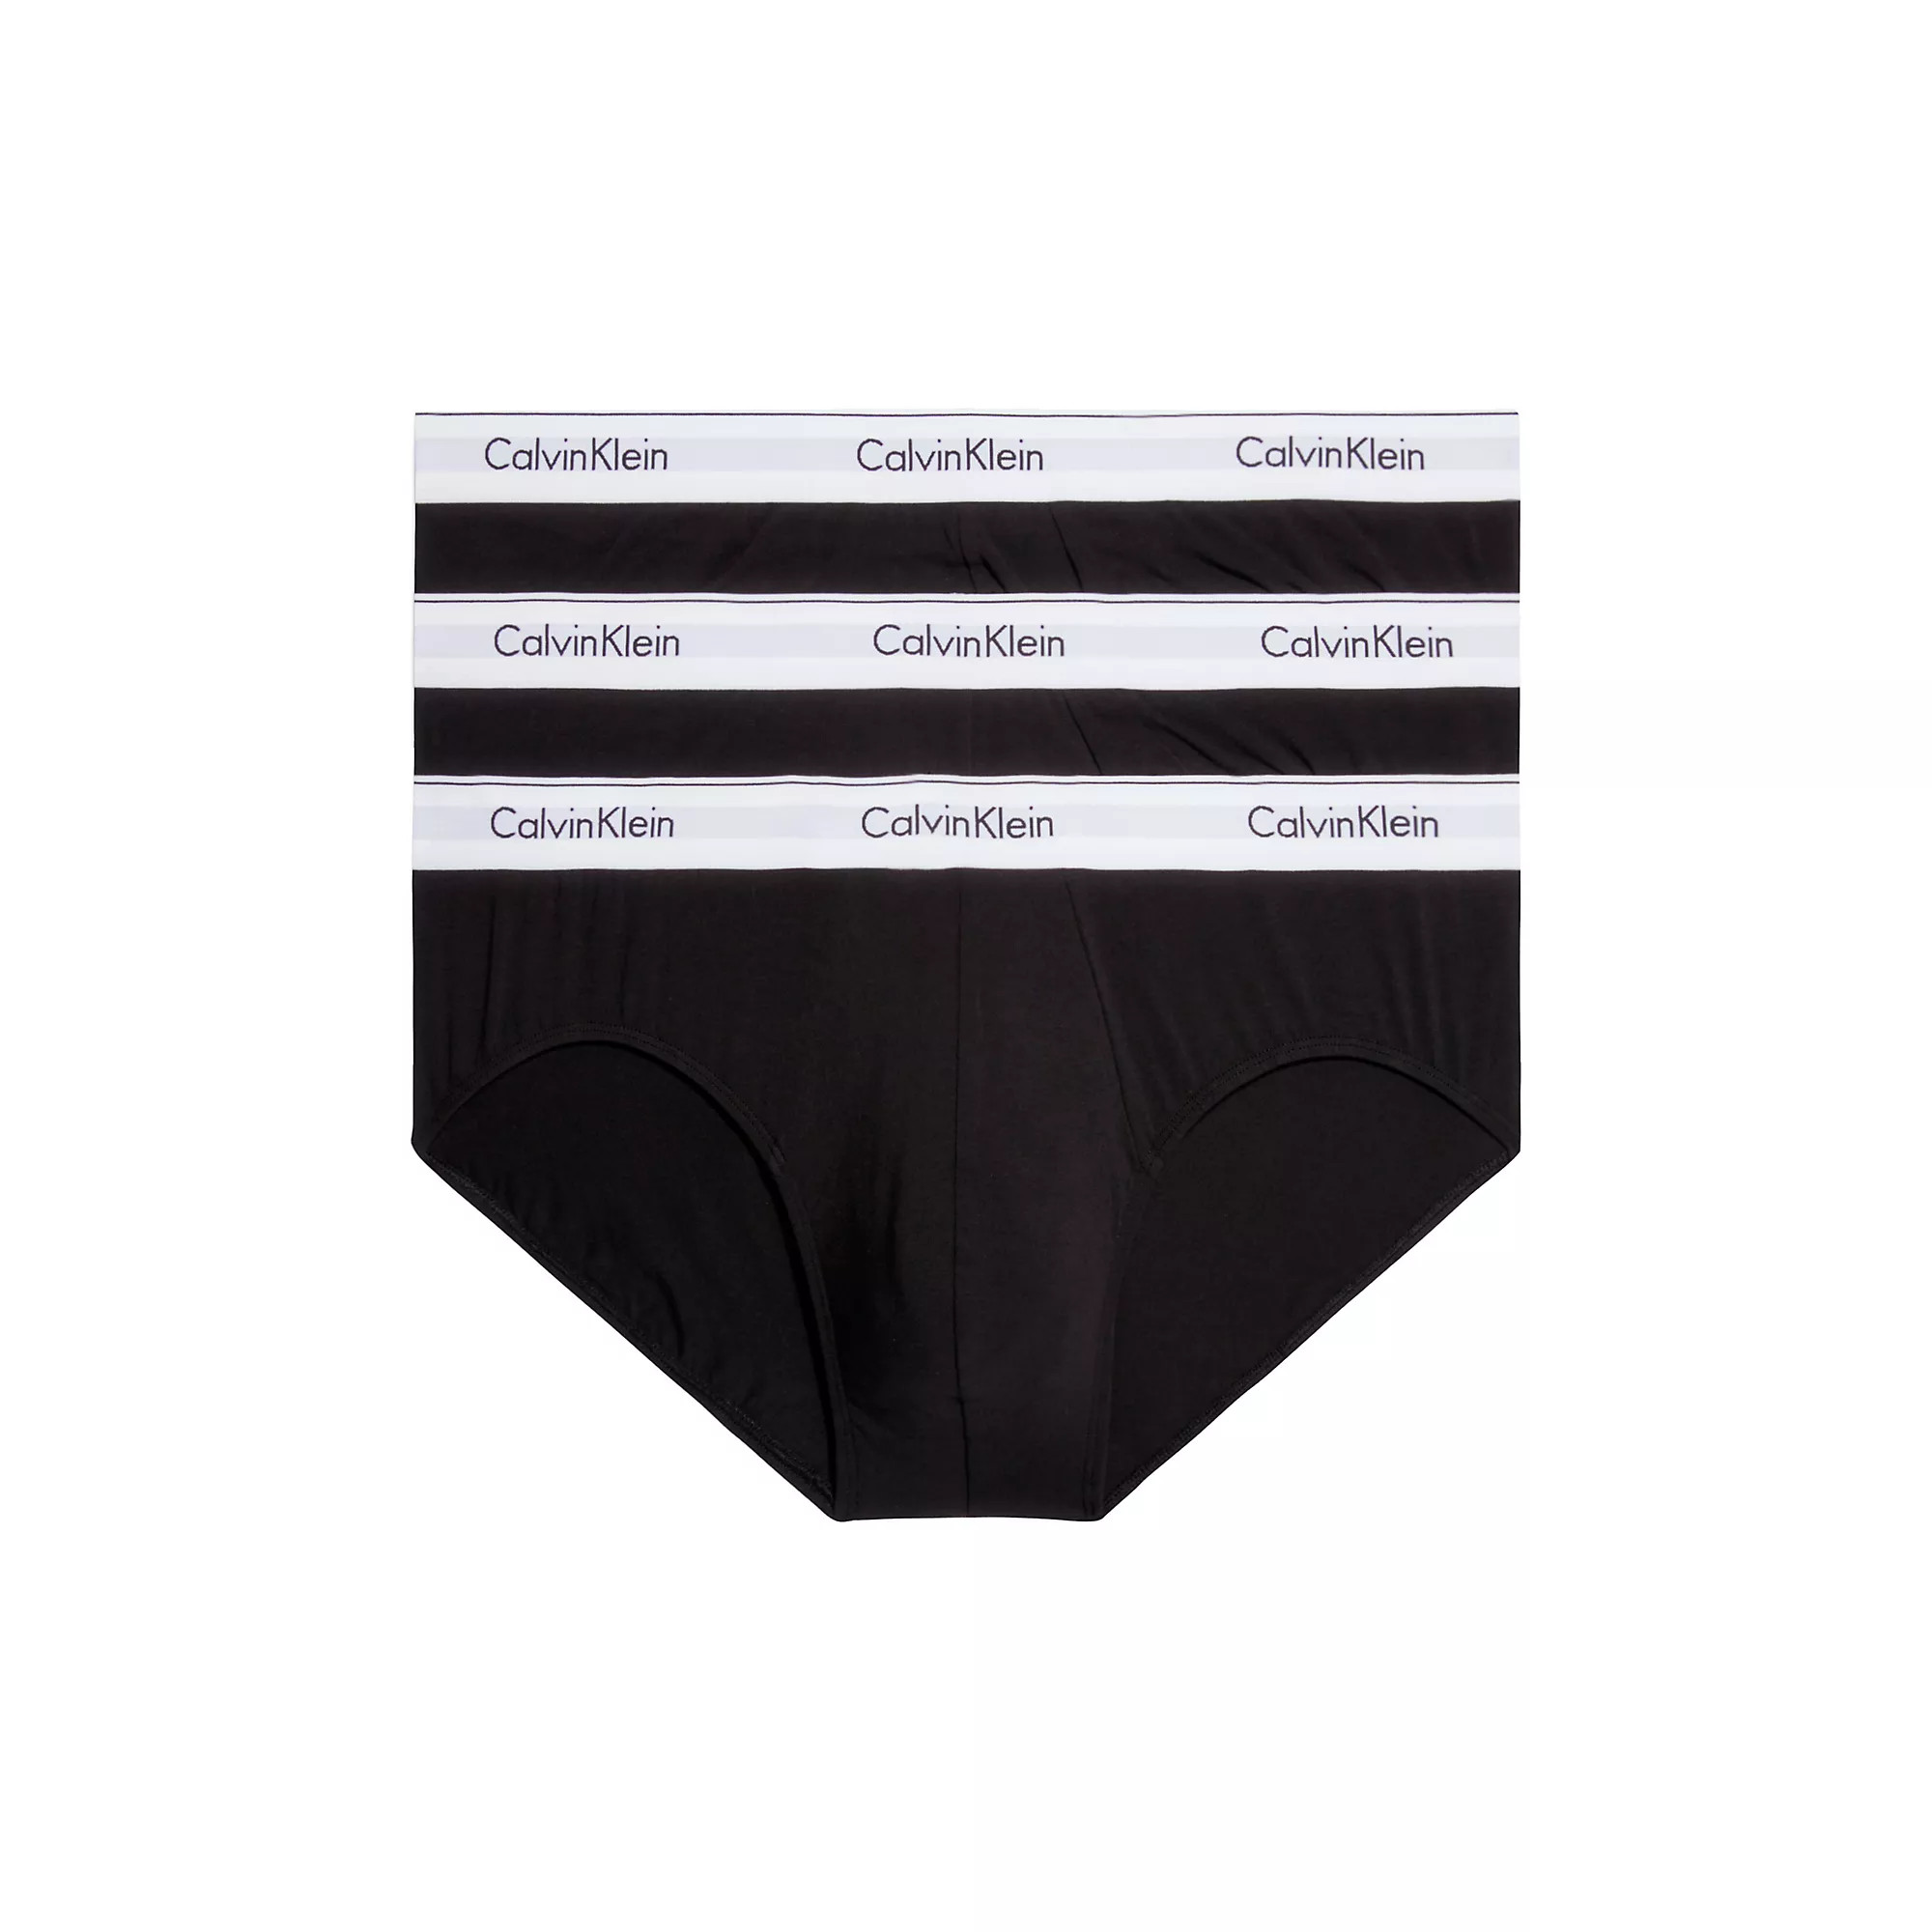 Pánské spodní prádlo HIP BRIEF 3PK 000NB2379A001 - Calvin Klein L